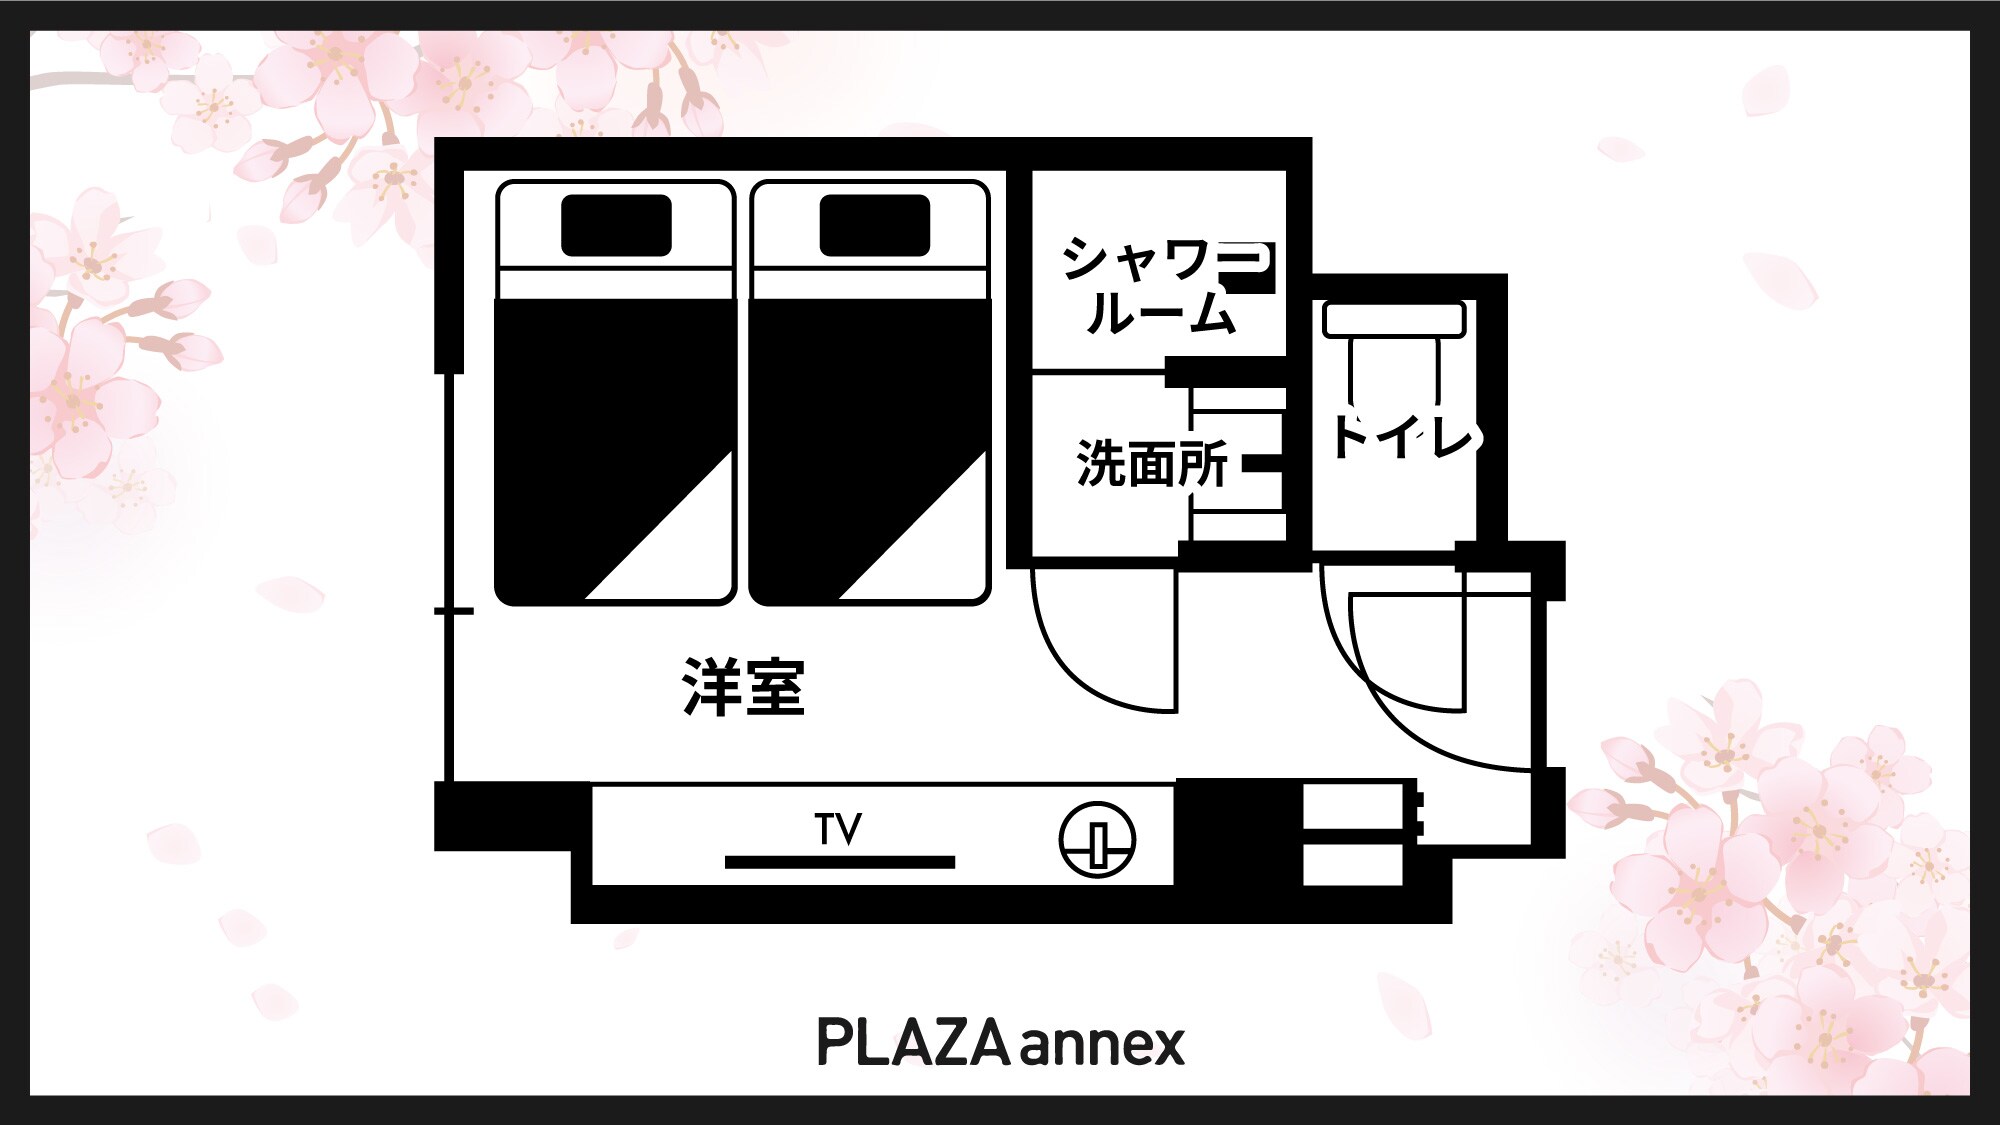 Twin room ◆ Floor plan